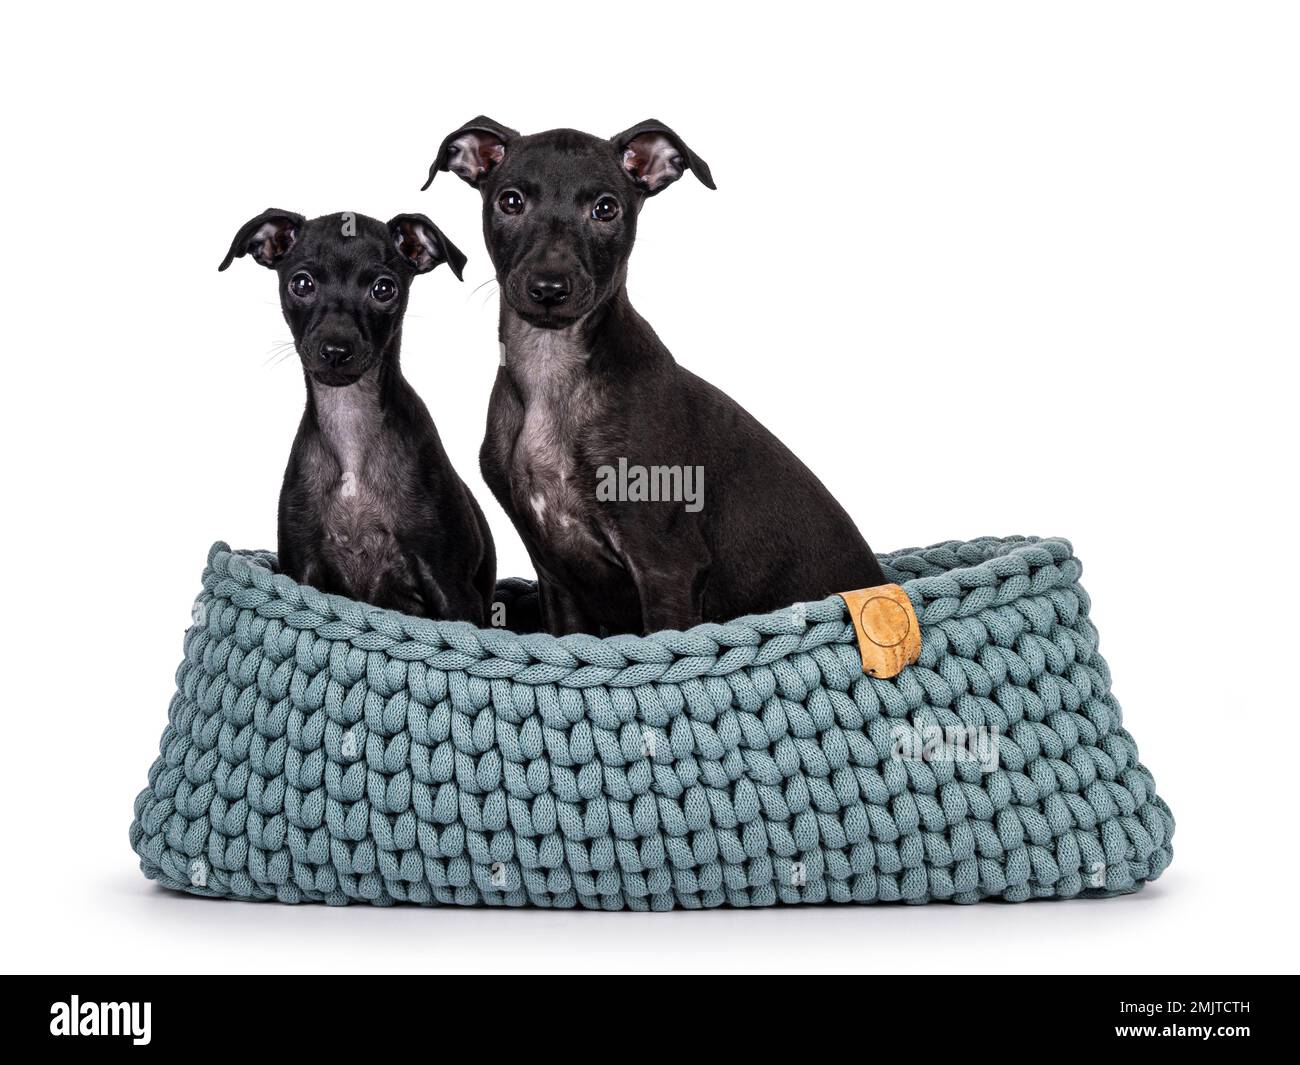 Ein niedliches Duo von 2 italienischen Windhund-Hündinnen, auch bekannt als italienische Sighthound-Welpen, die zusammen in einem Strickkorb sitzen. Ich schaue direkt in die Kamera. Isoliert auf einem weißen Ba Stockfoto